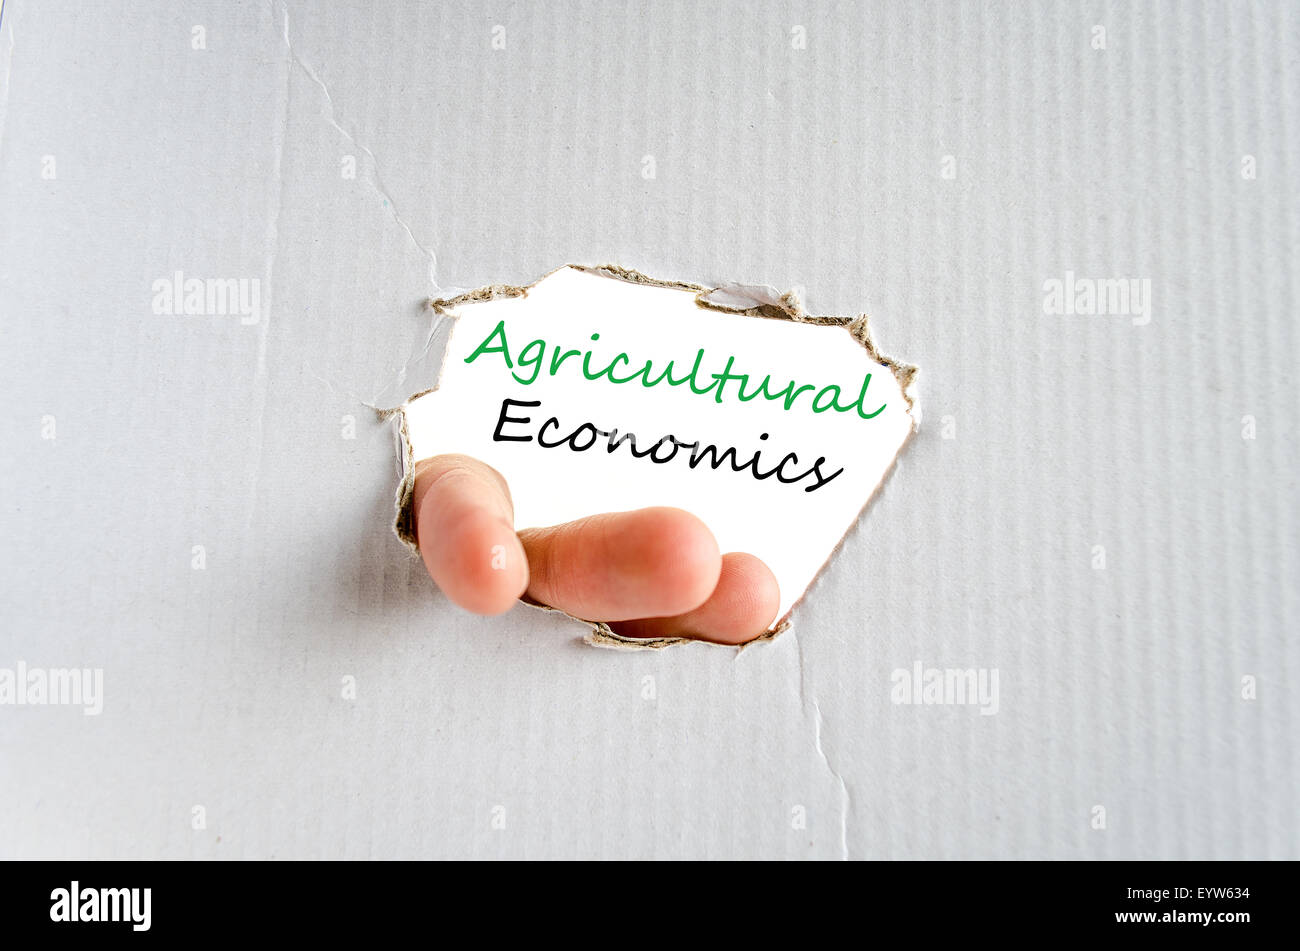 Economia agraria testo concetto isolato su sfondo bianco Foto Stock